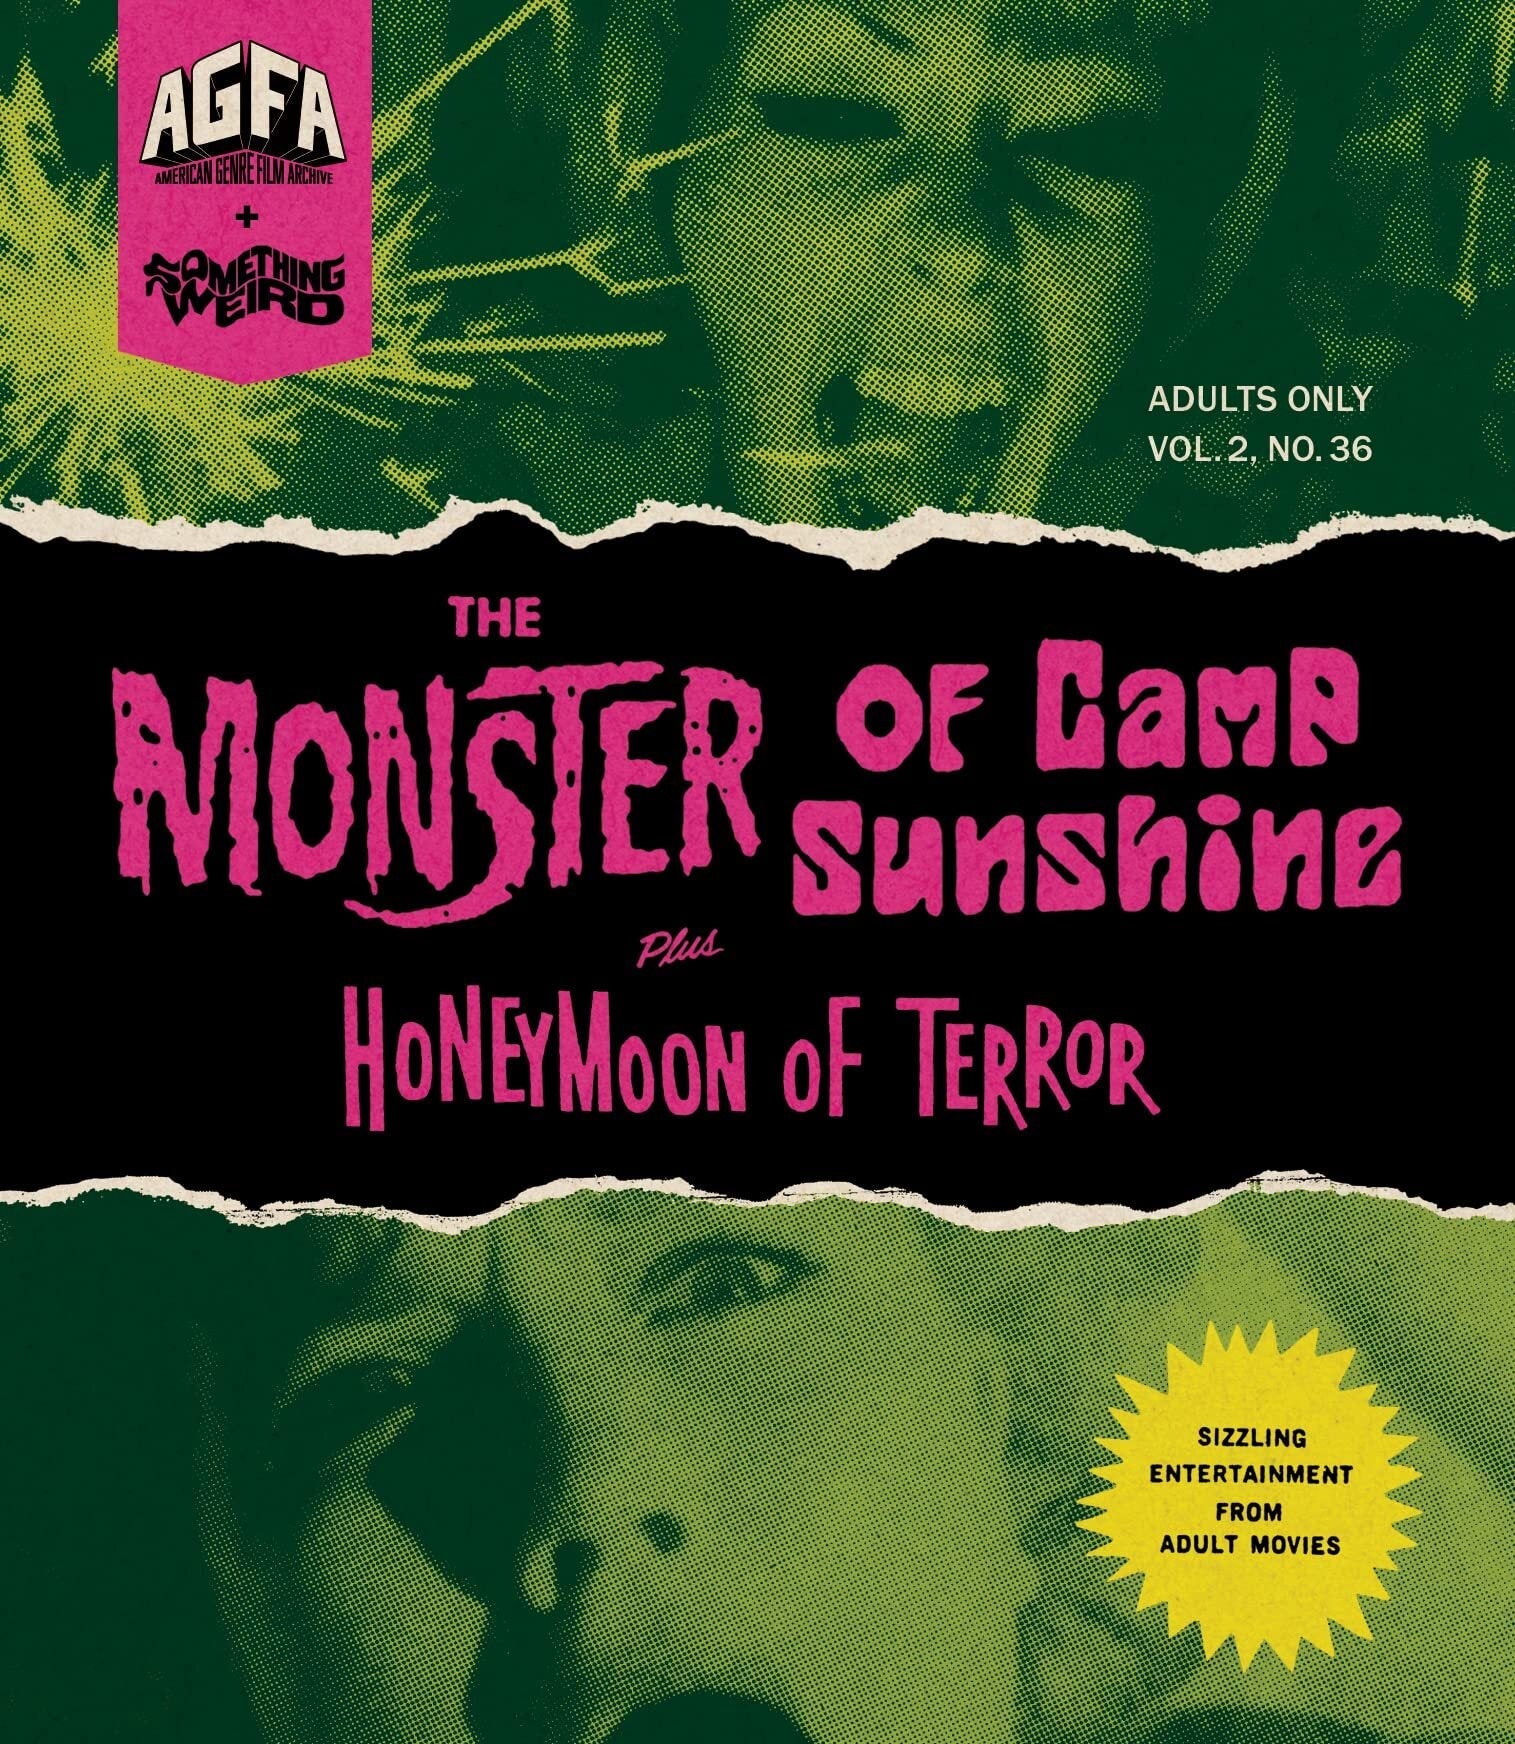 The Monster Of Camp Sunshine / Honeymoon Terror Blu-Ray Blu-Ray